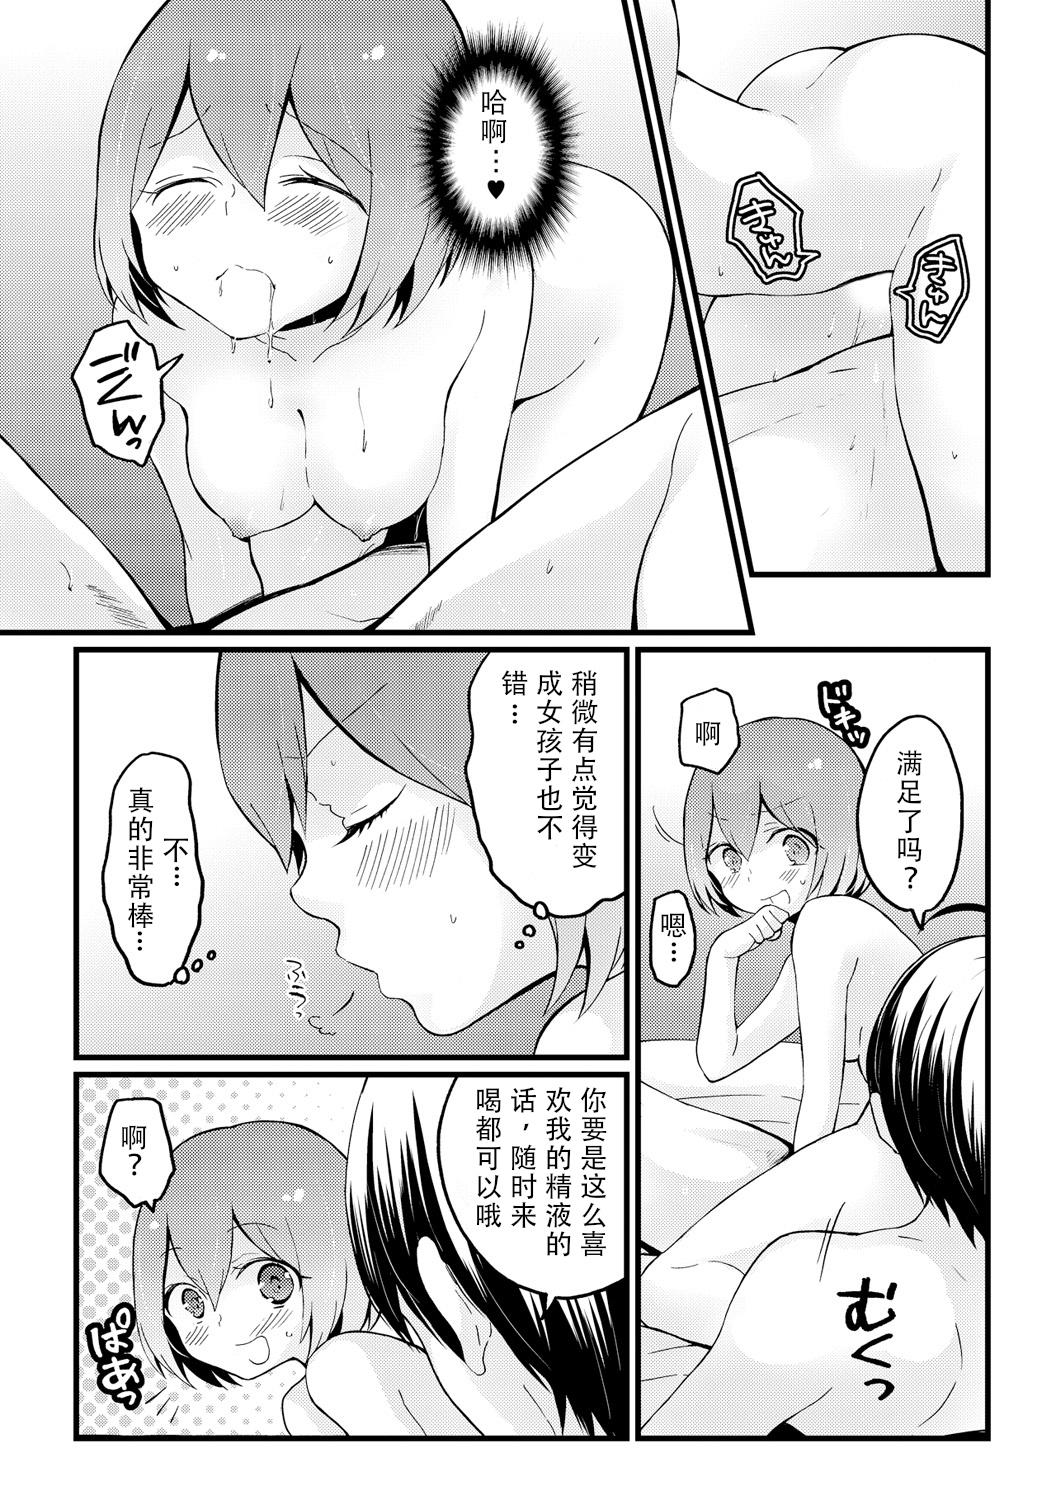 Red Head Totsuzen onnanoko ni nattanode, ore no oppai monde mimasen ka? 13 Free Rough Sex Porn - Page 6